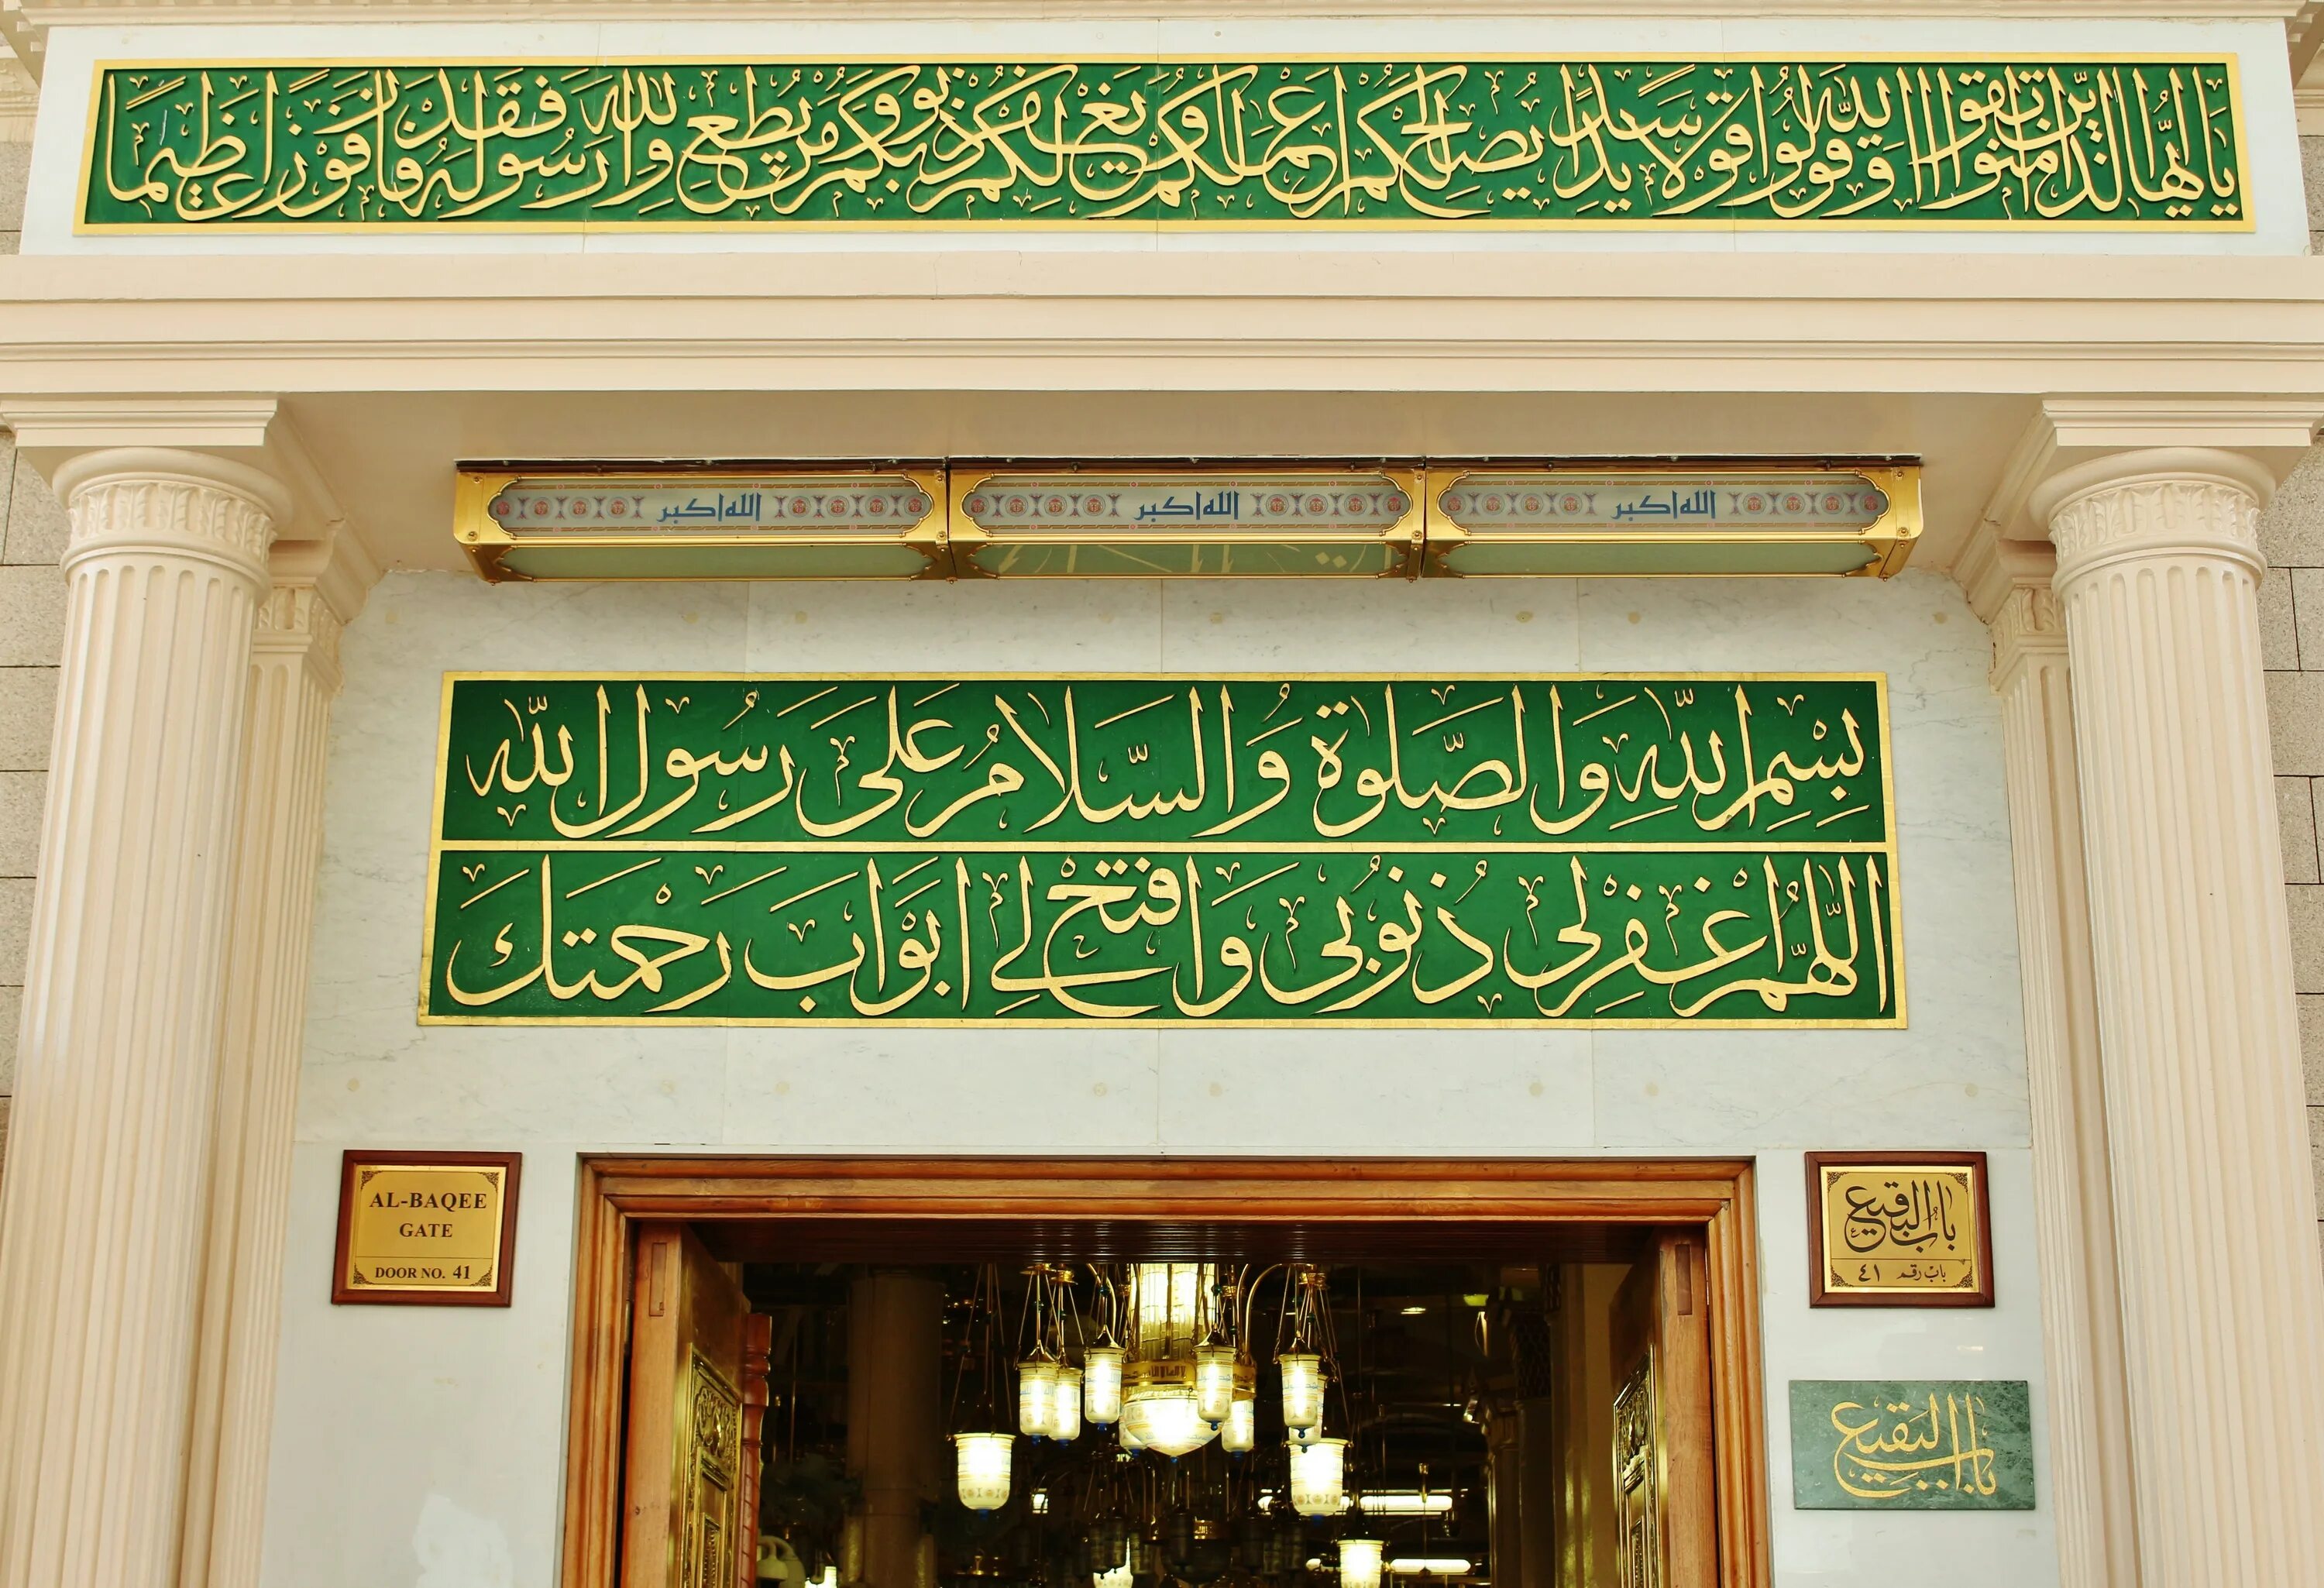 Мухаммад в мекке. Мечеть пророка Мухаммеда в Махачкале. Масджид Аль Наби. Мечеть пророка (Масджид АН-Набави). Пророк Мухаммед Мекка.